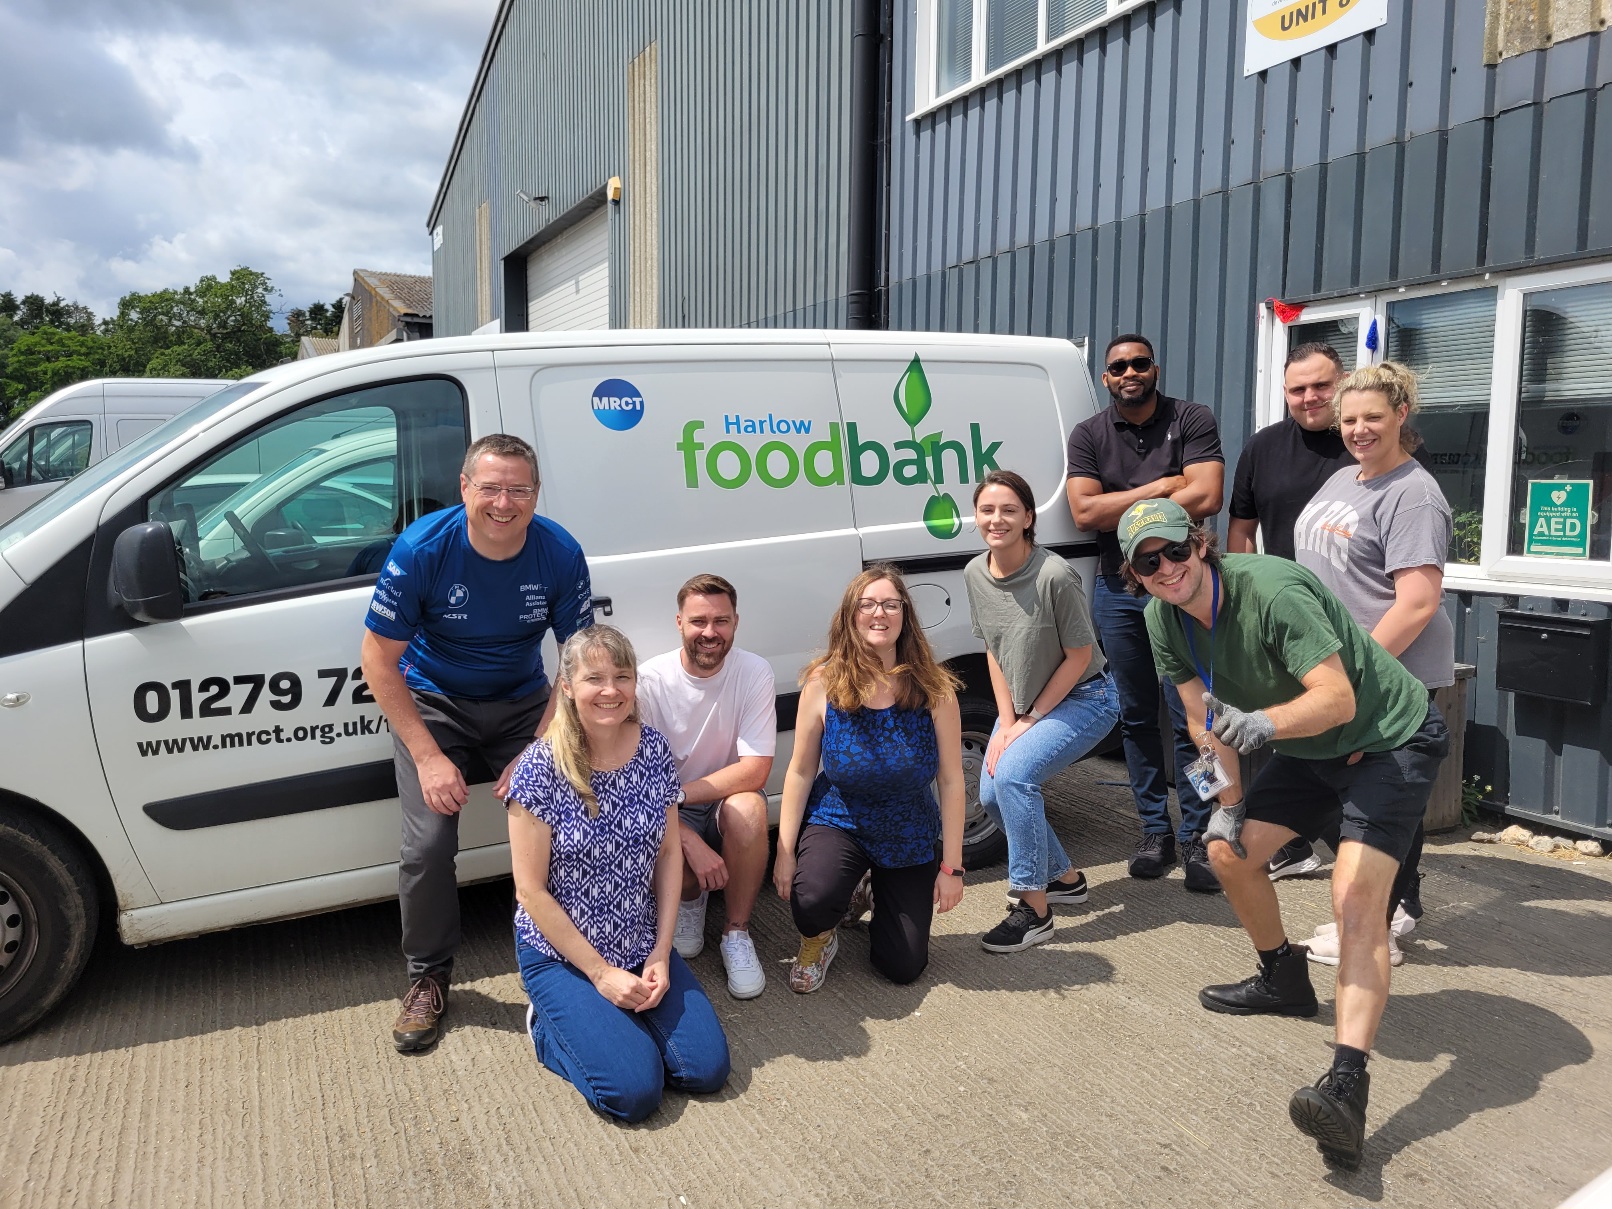 a group of people posing by a food bank van